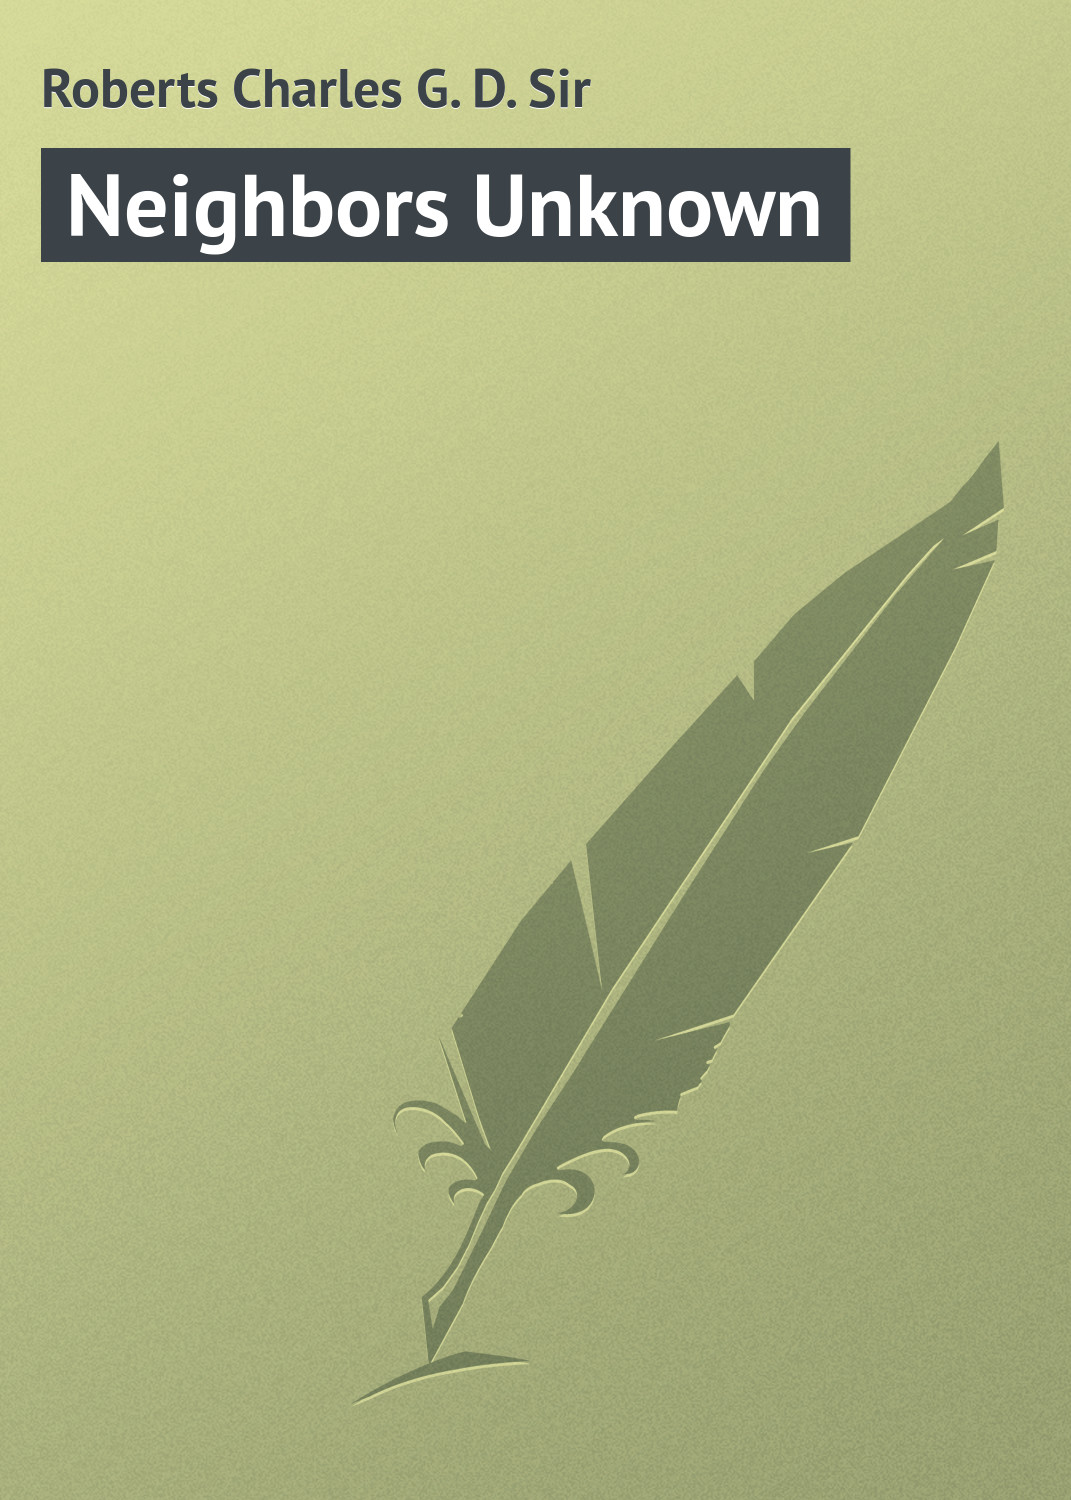 Книга Neighbors Unknown из серии , созданная Charles Roberts, может относится к жанру Зарубежная классика, Иностранные языки. Стоимость электронной книги Neighbors Unknown с идентификатором 23171611 составляет 5.99 руб.